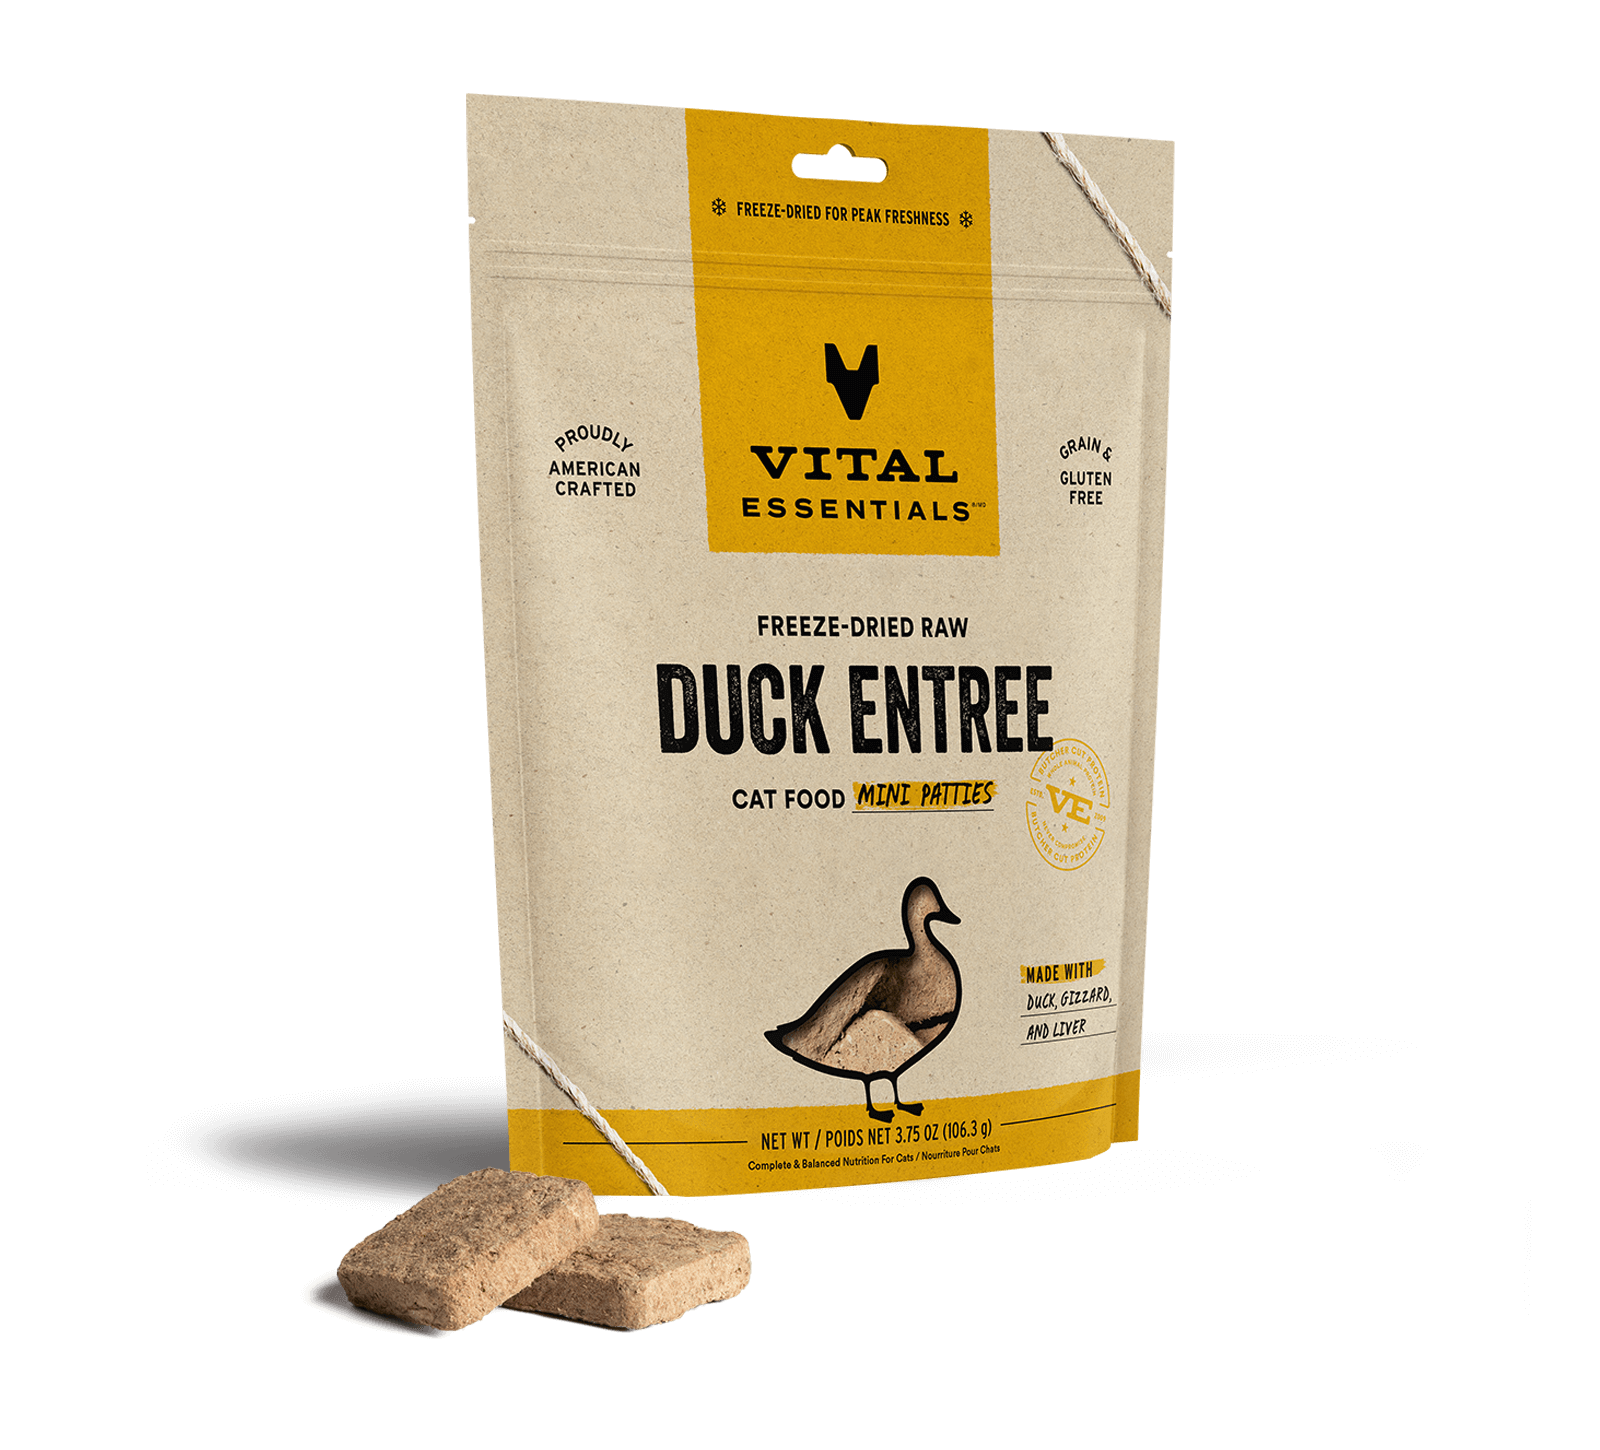 Vital Essentials Freeze-Dried Raw Duck Entree Cat Food Mini Patties, 3.75 oz - Food